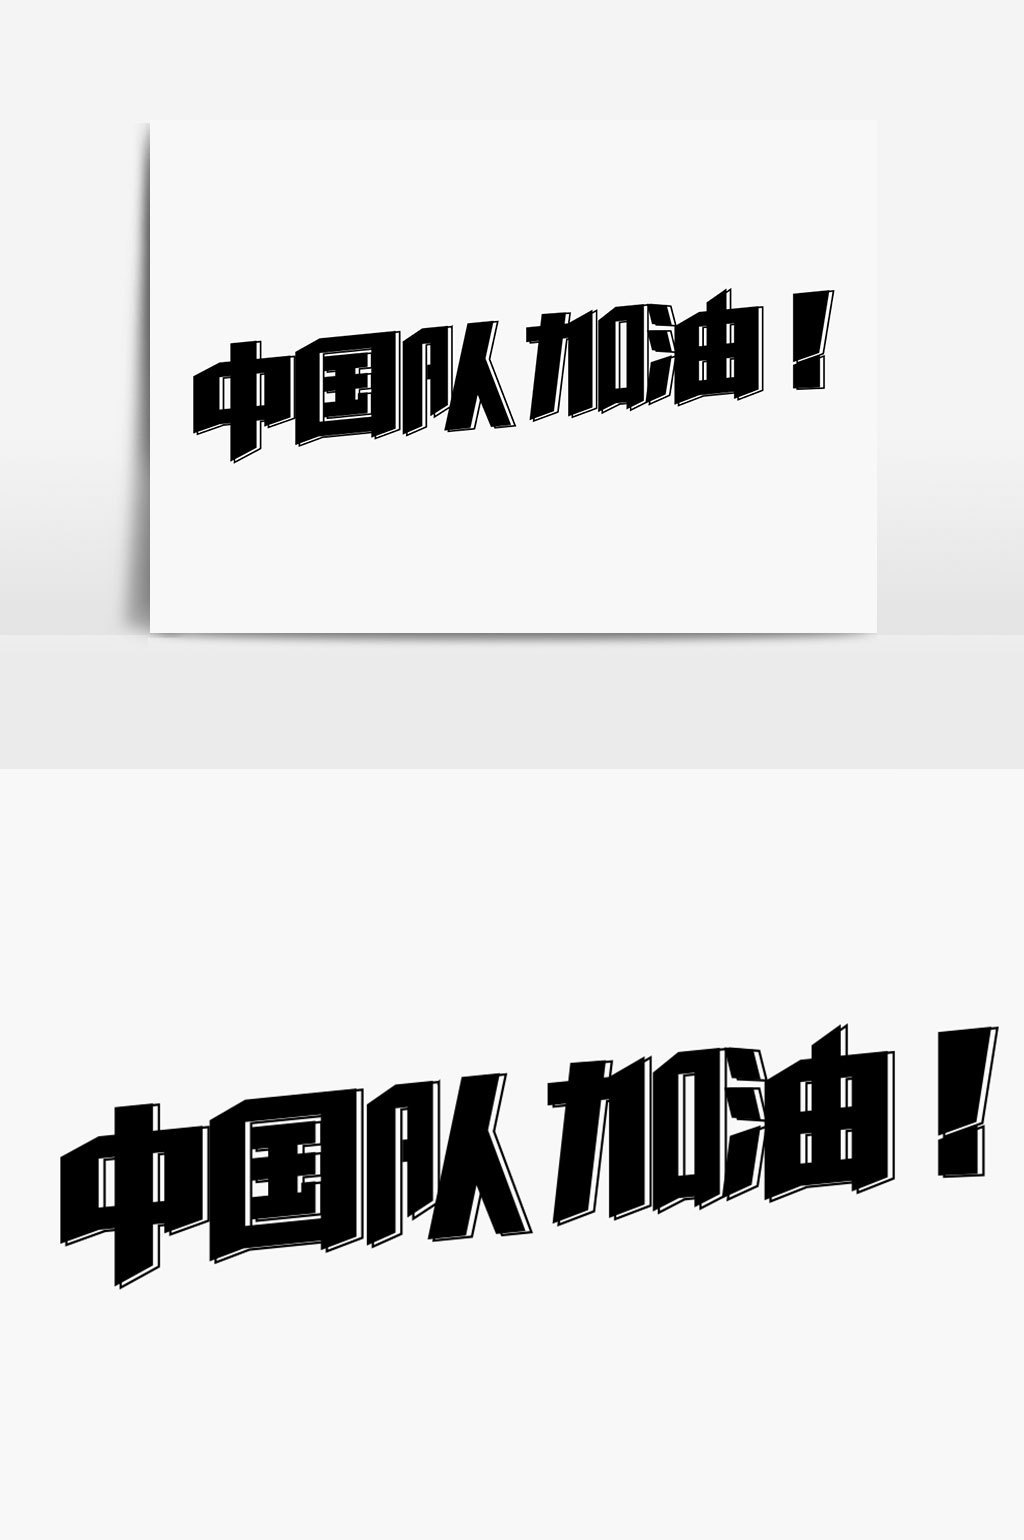 中国队加油字体设计